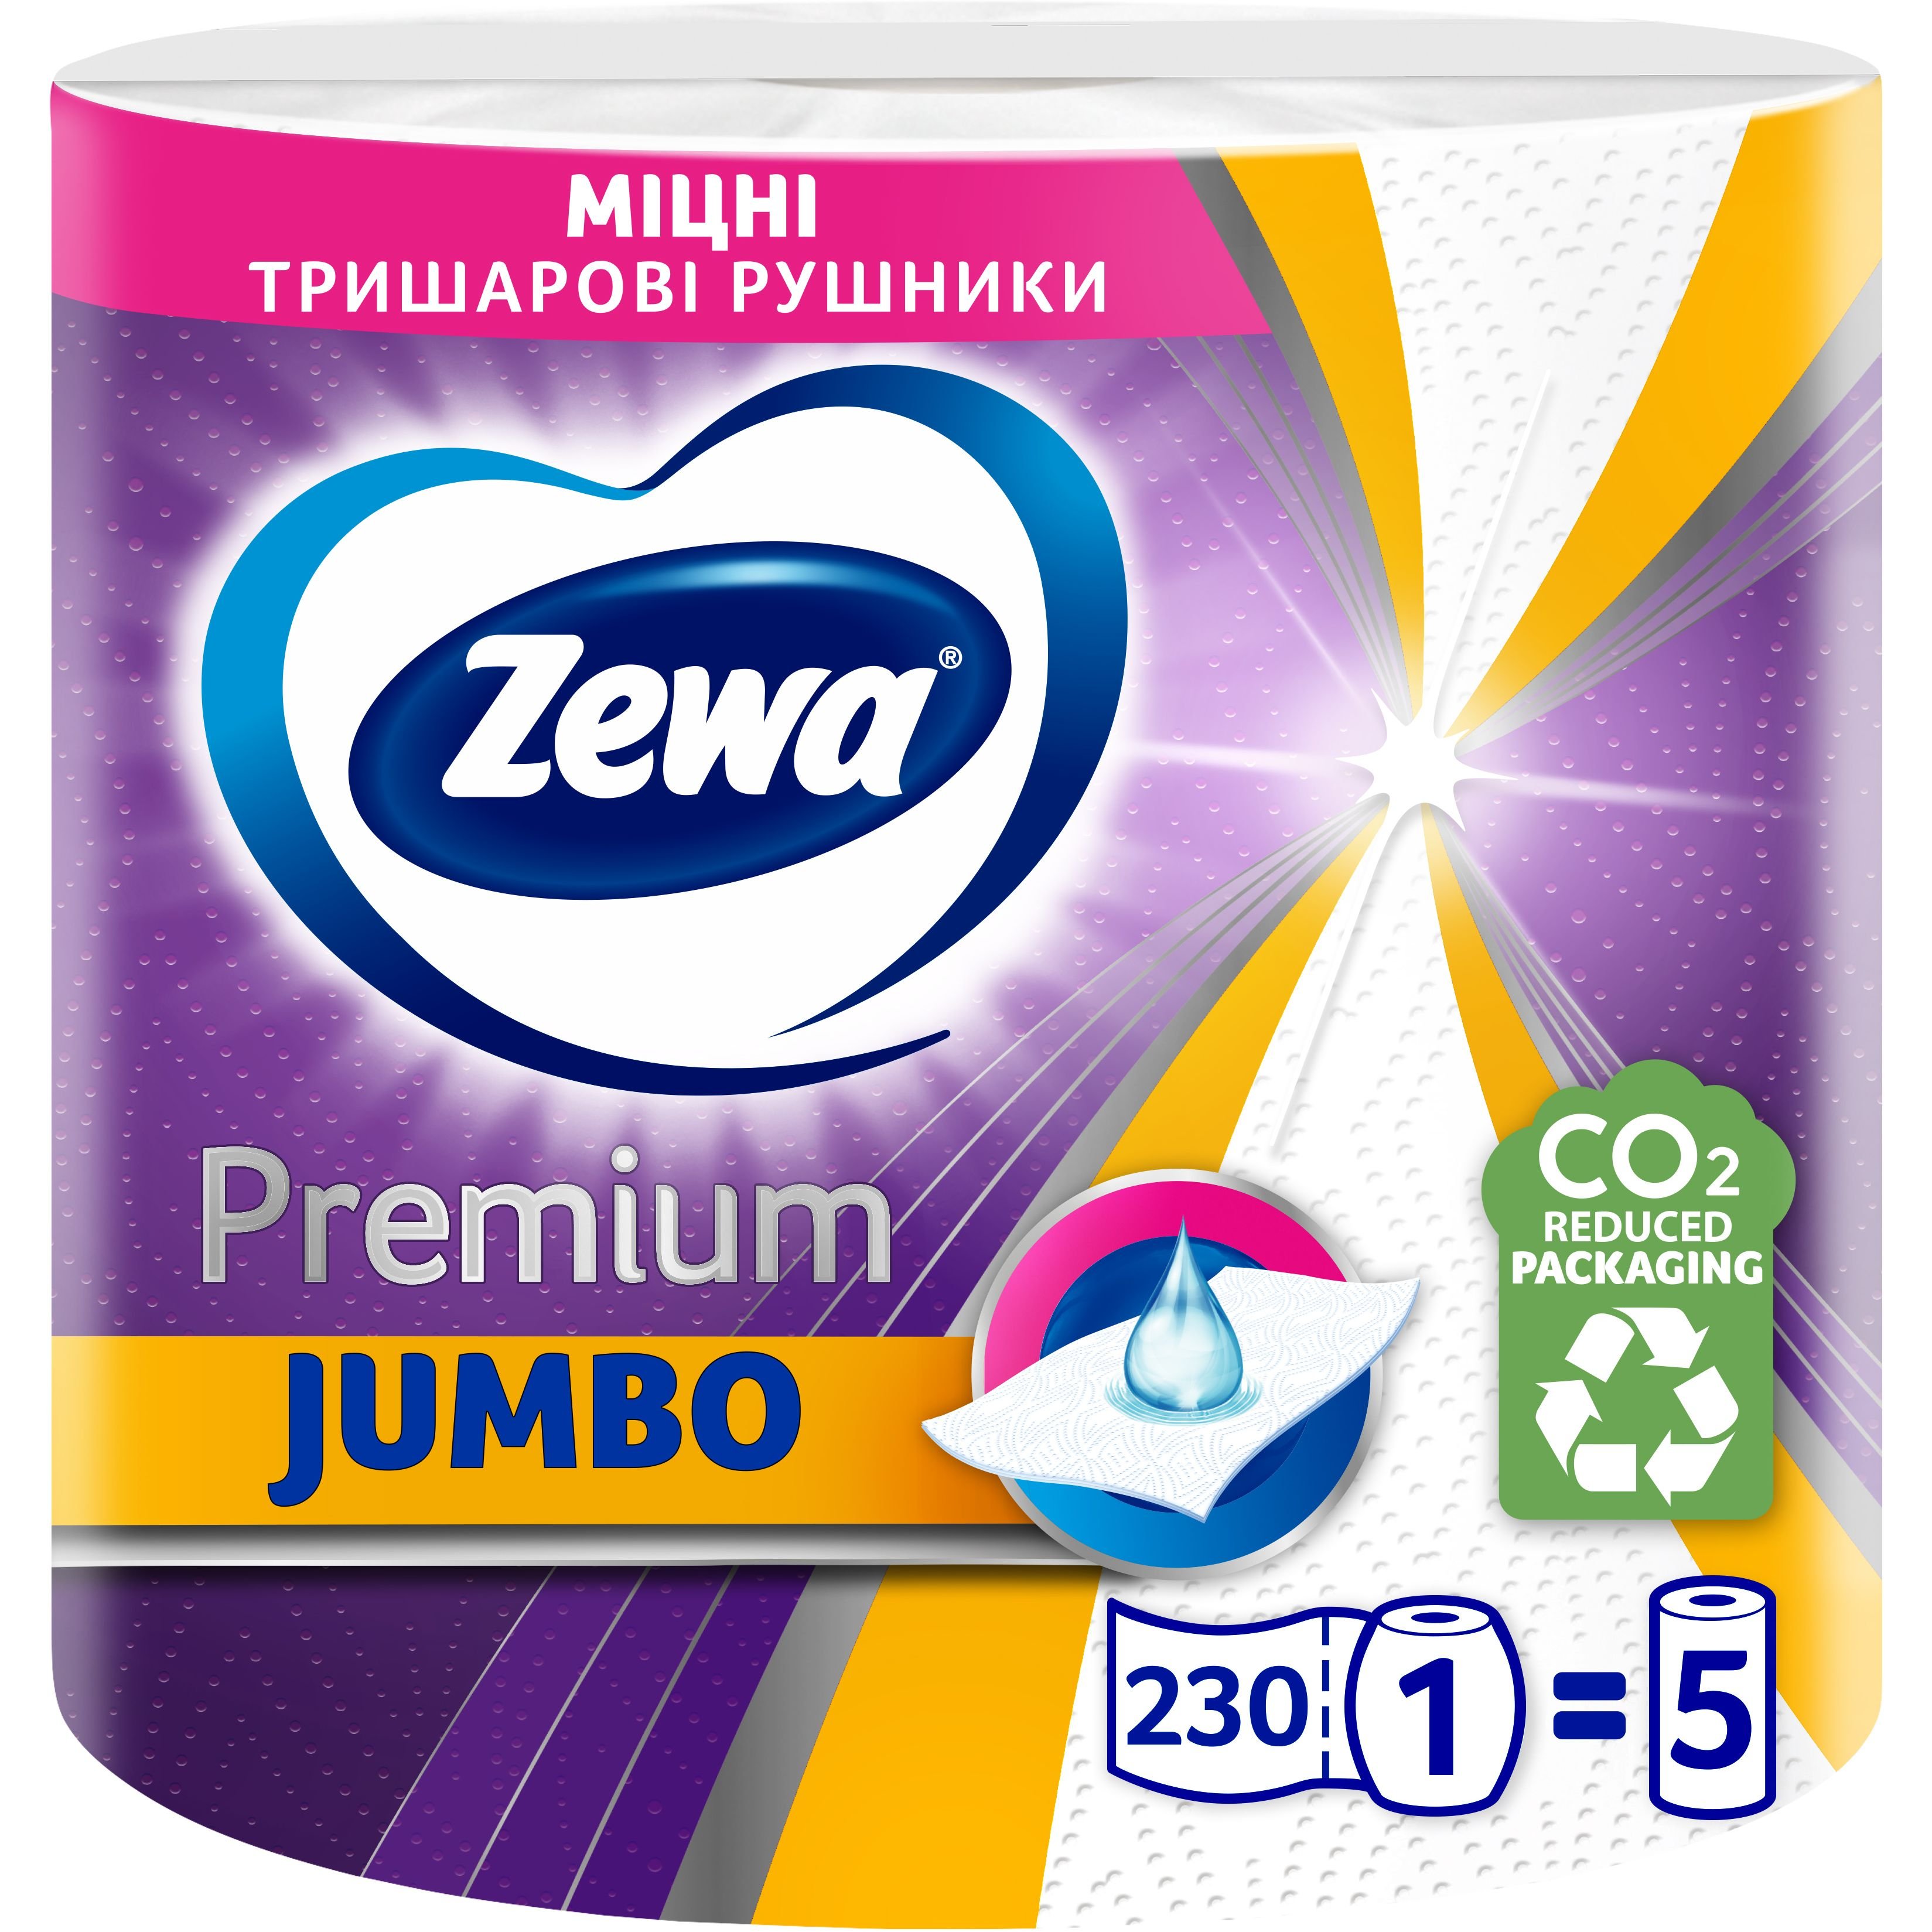 Бумажные полотенца Zewa Premium Jumbo трехслойные 1 рулон - фото 1